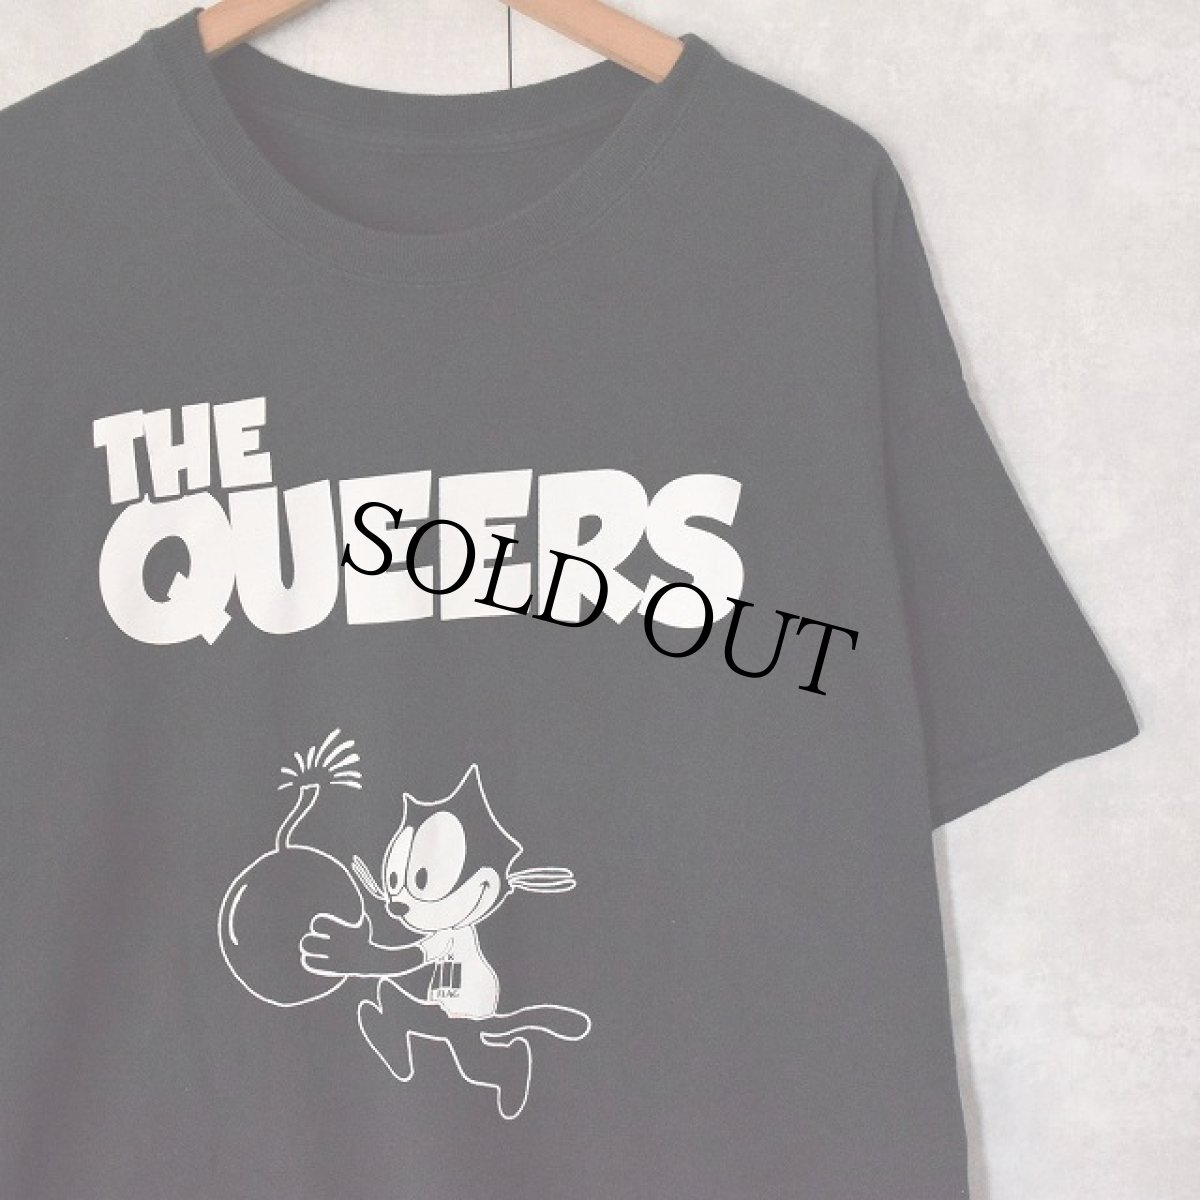 画像1: THE QUEERS パンクロックバンドTシャツ (1)